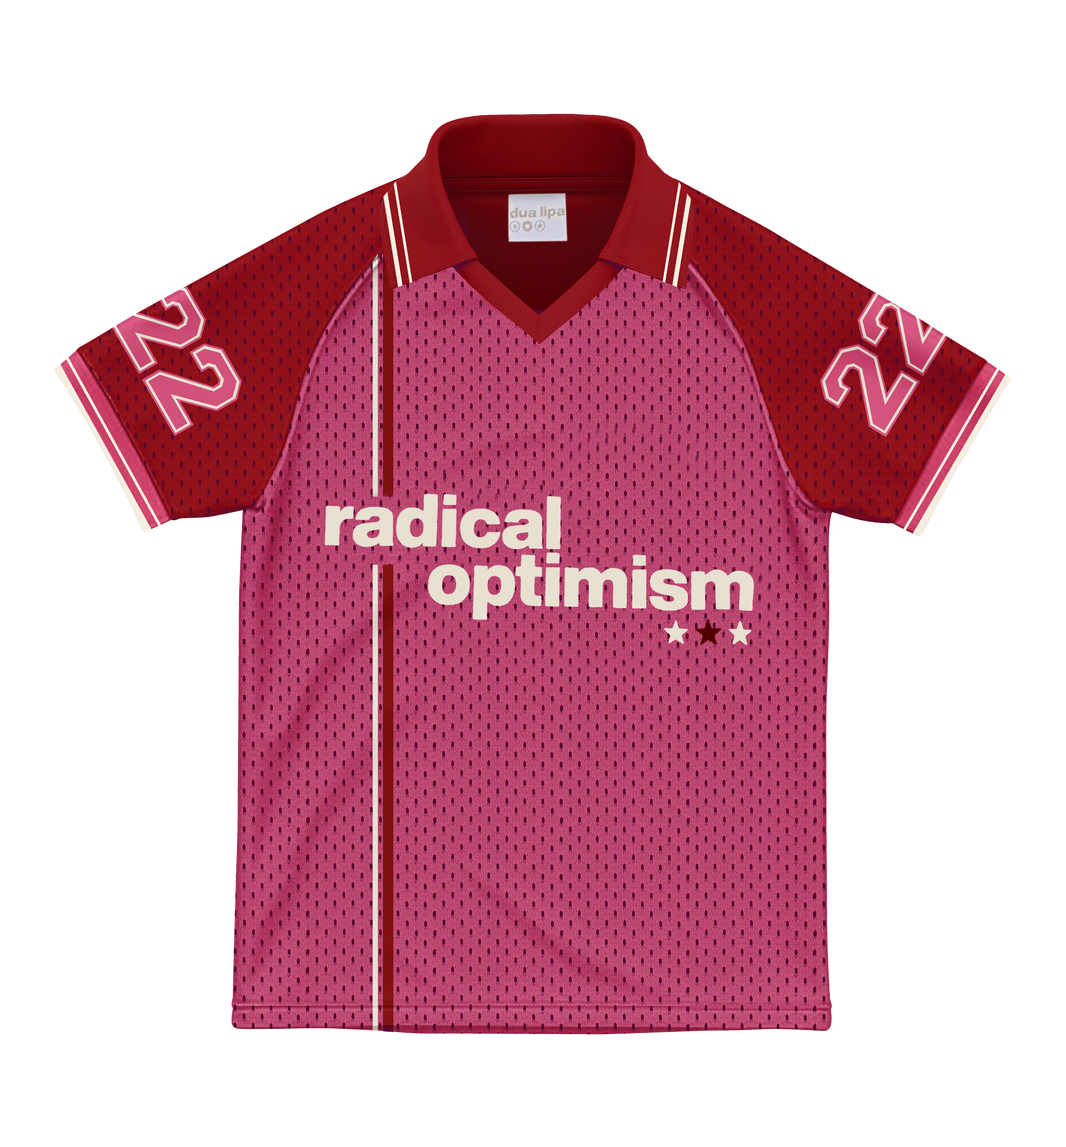 radical optimism mesh jersey